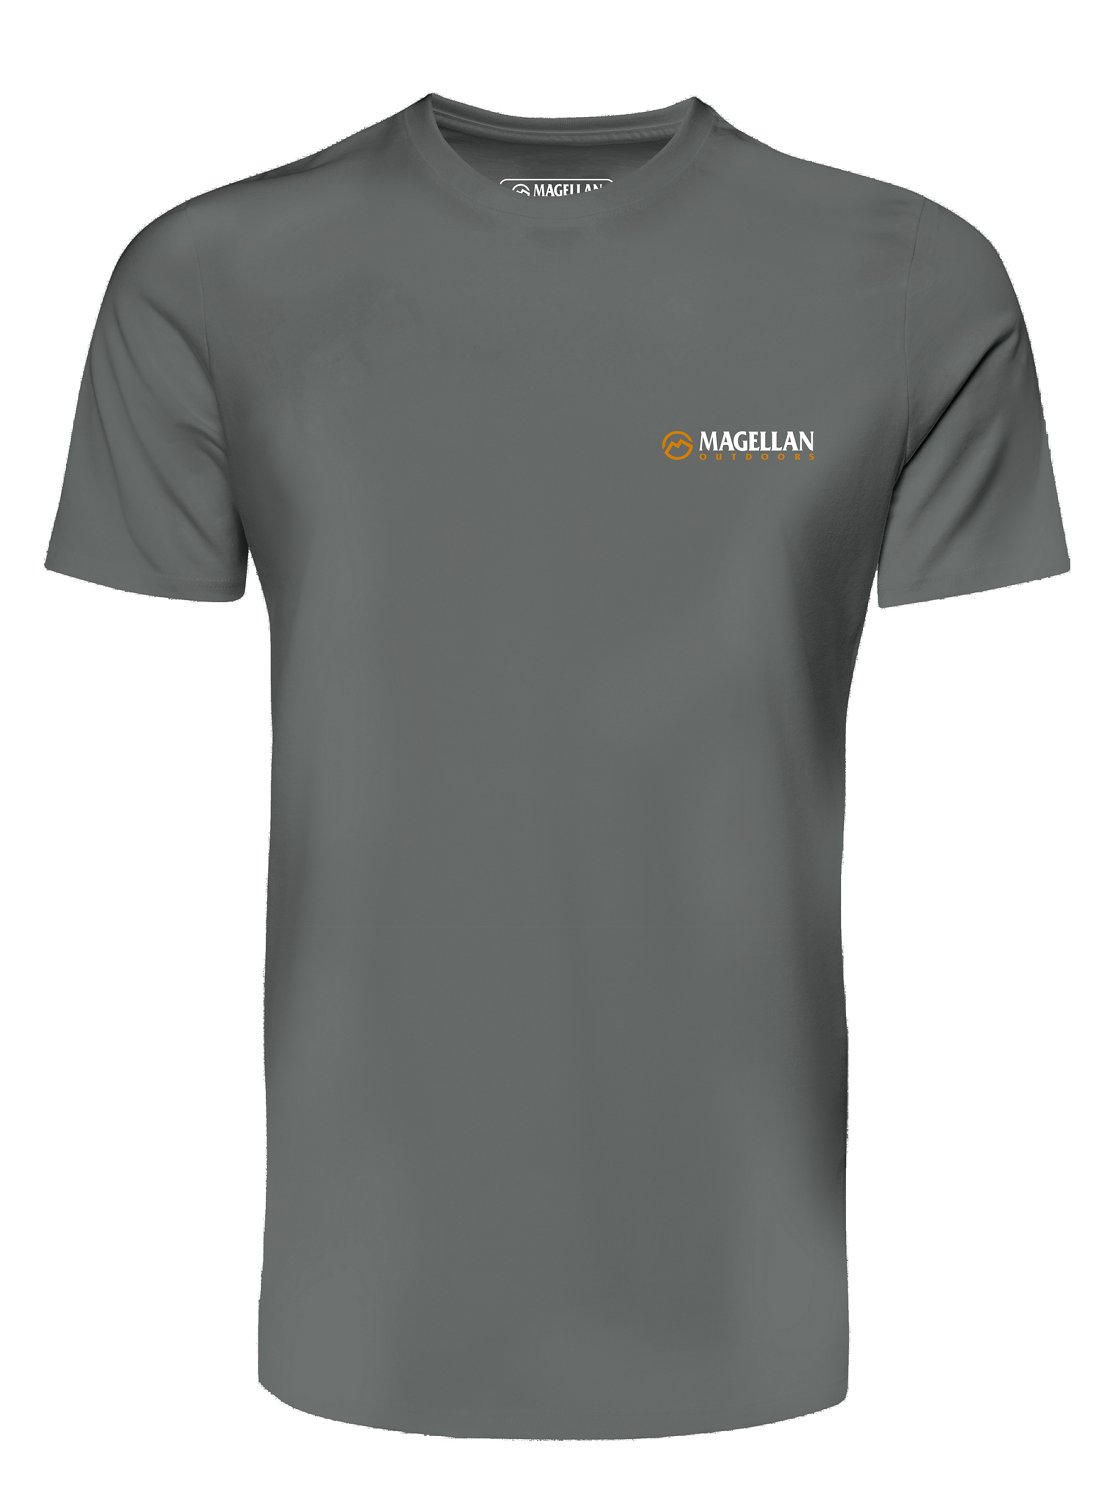 Magellan Outdoors Men's Under Lift Short Sleeve Shirt                                                                            - view number 2